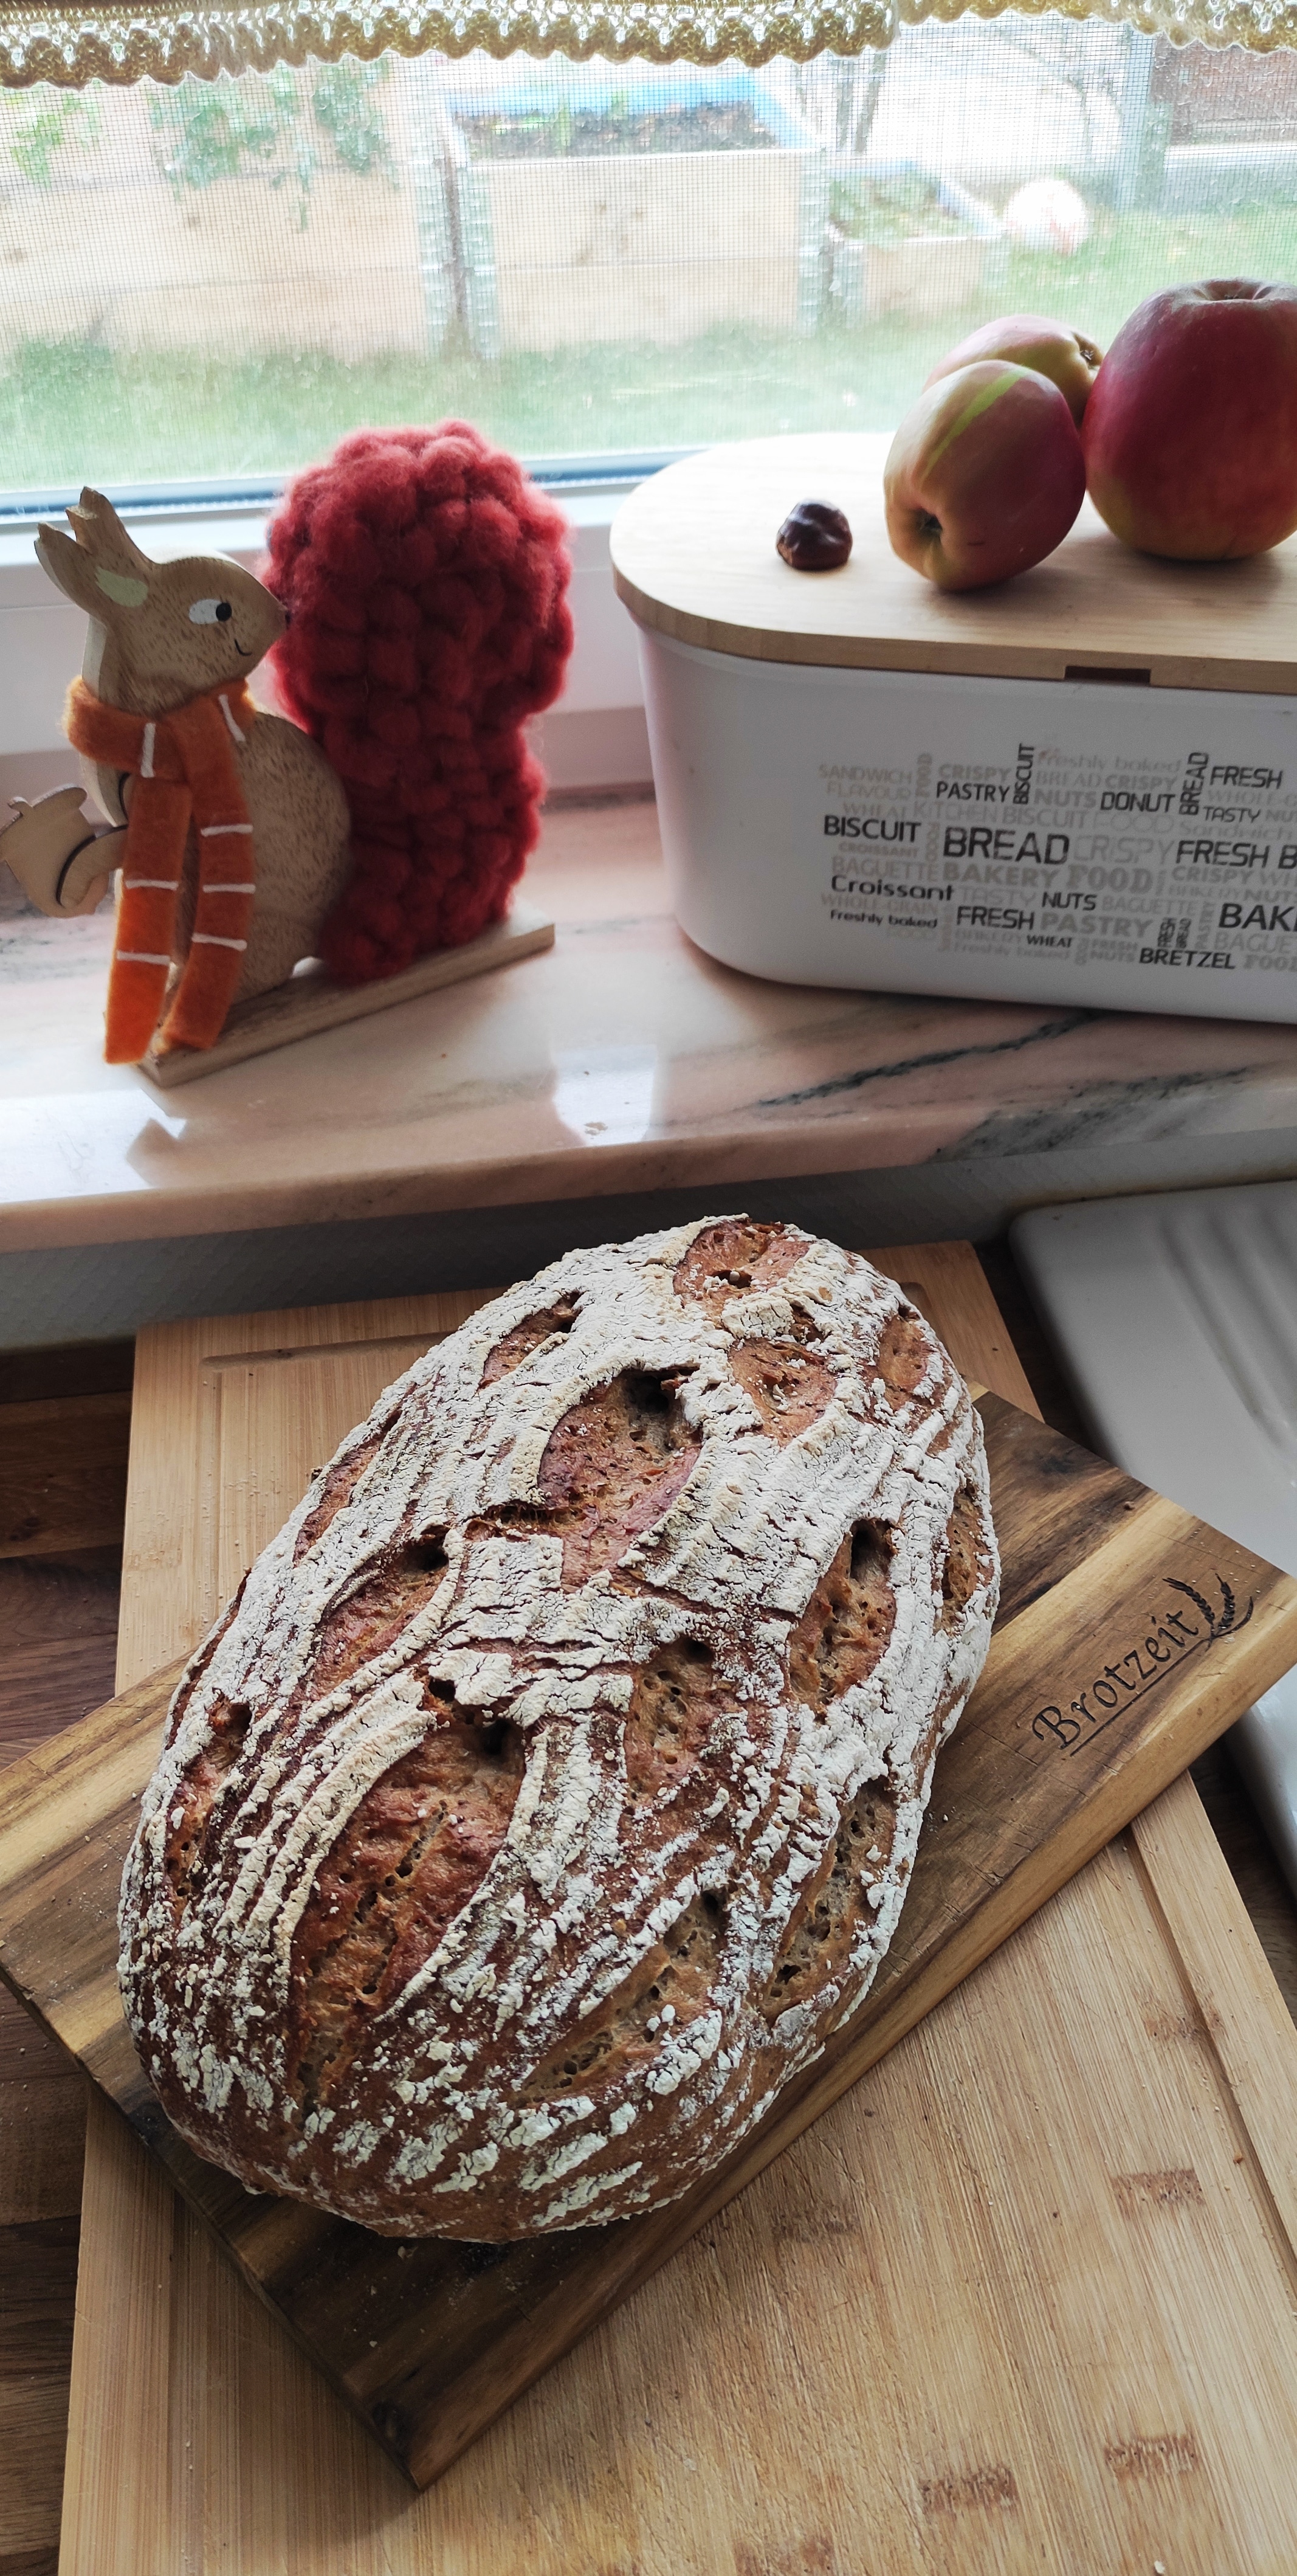 Weizen-Roggenbrot mit Sauerteig - ein herrlich saftiges Brot!